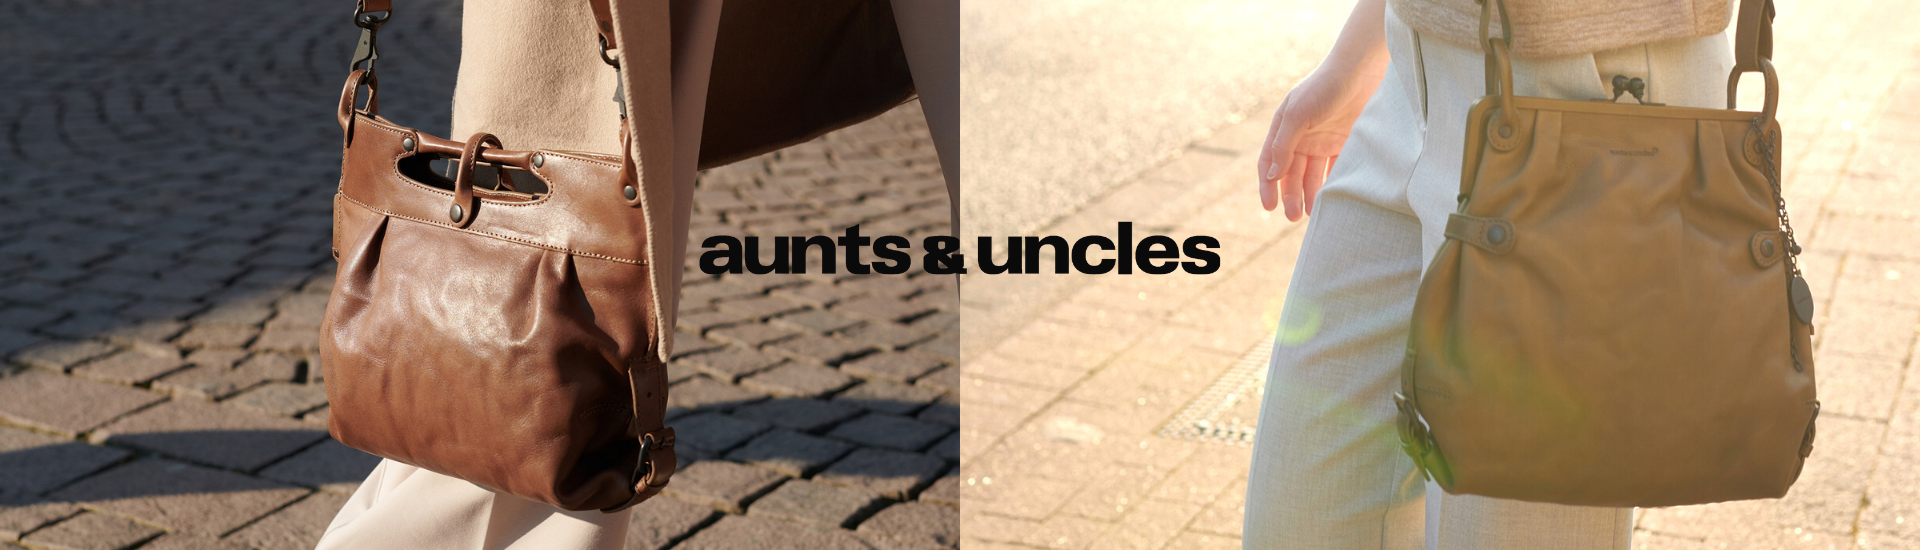 aunts & uncles